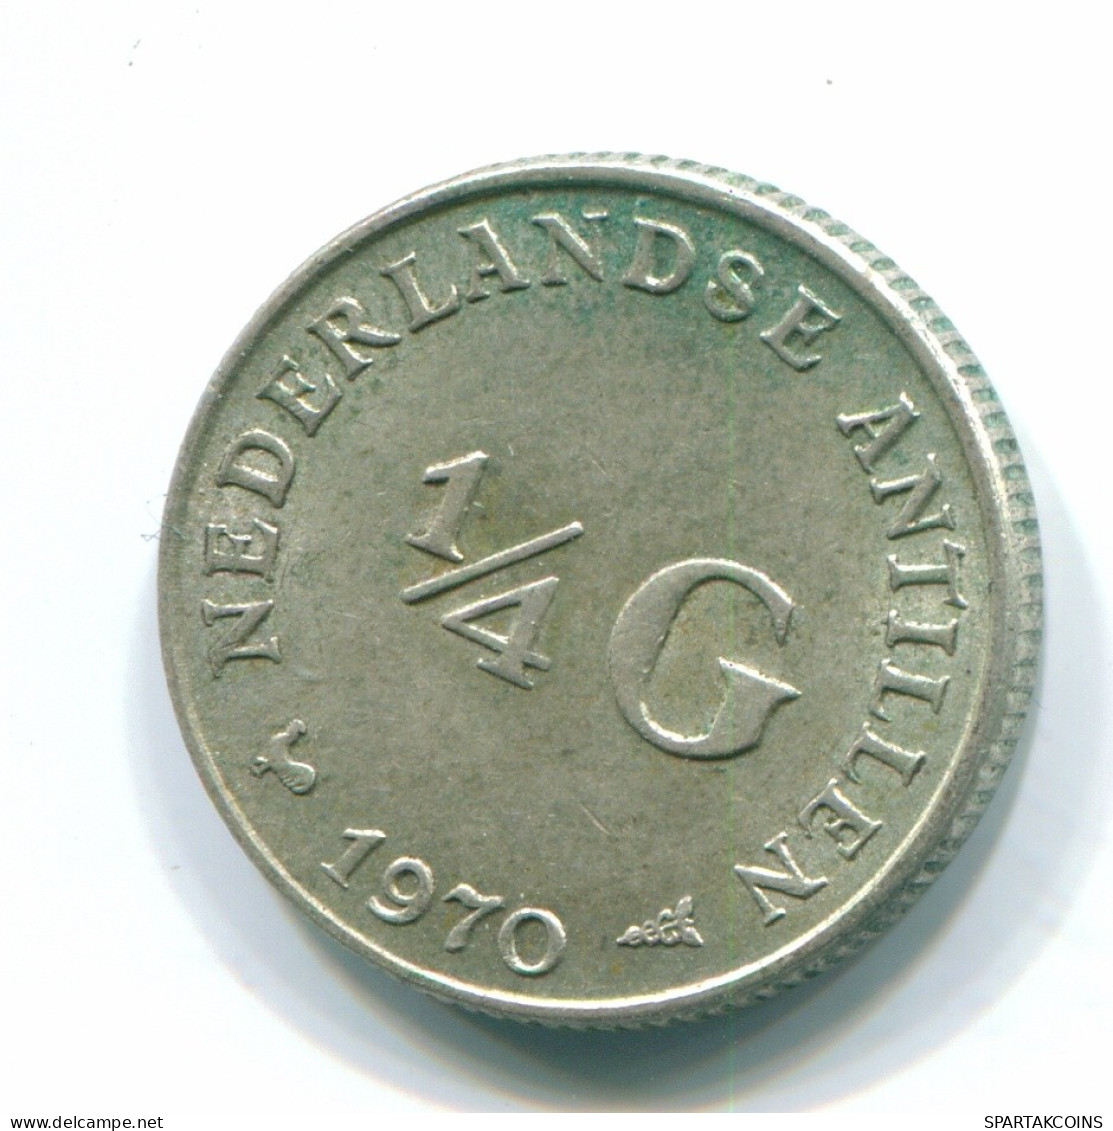 1/4 GULDEN 1970 NIEDERLÄNDISCHE ANTILLEN SILBER Koloniale Münze #S13692.D.A - Niederländische Antillen